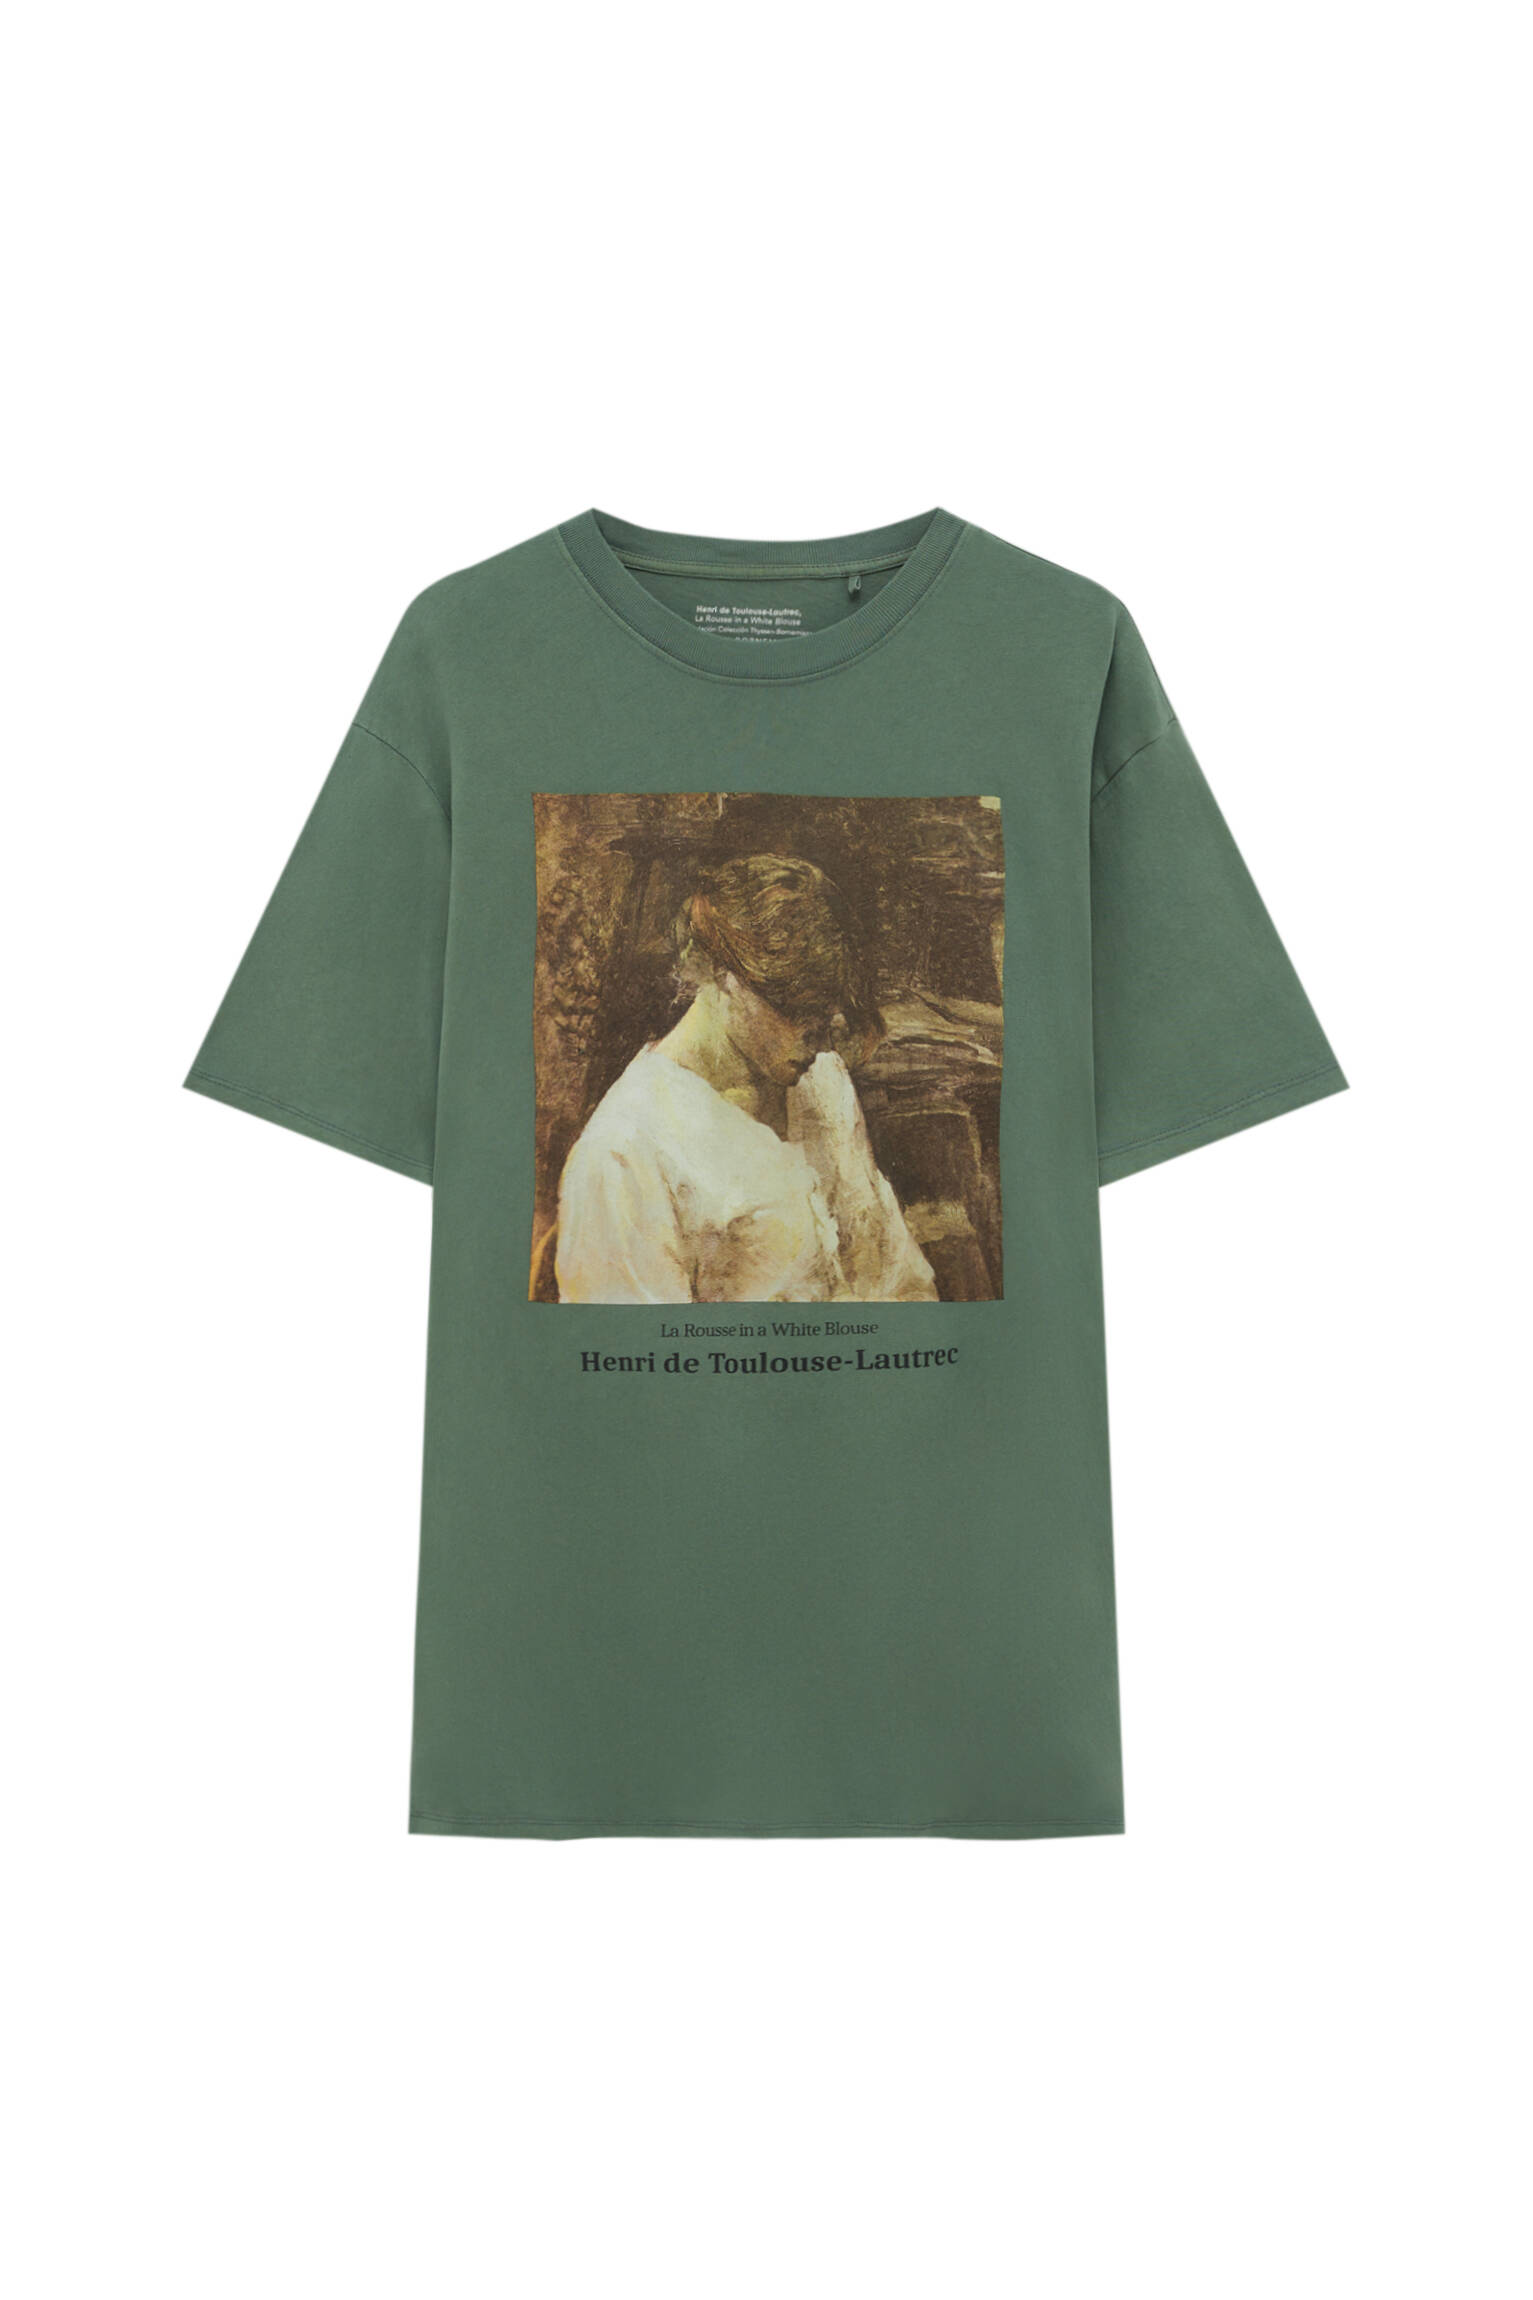 Зеленая футболка с изображением картины Анри де Тулуз-Лотрека. ЗЕЛЕНЫЙ Pull & Bear